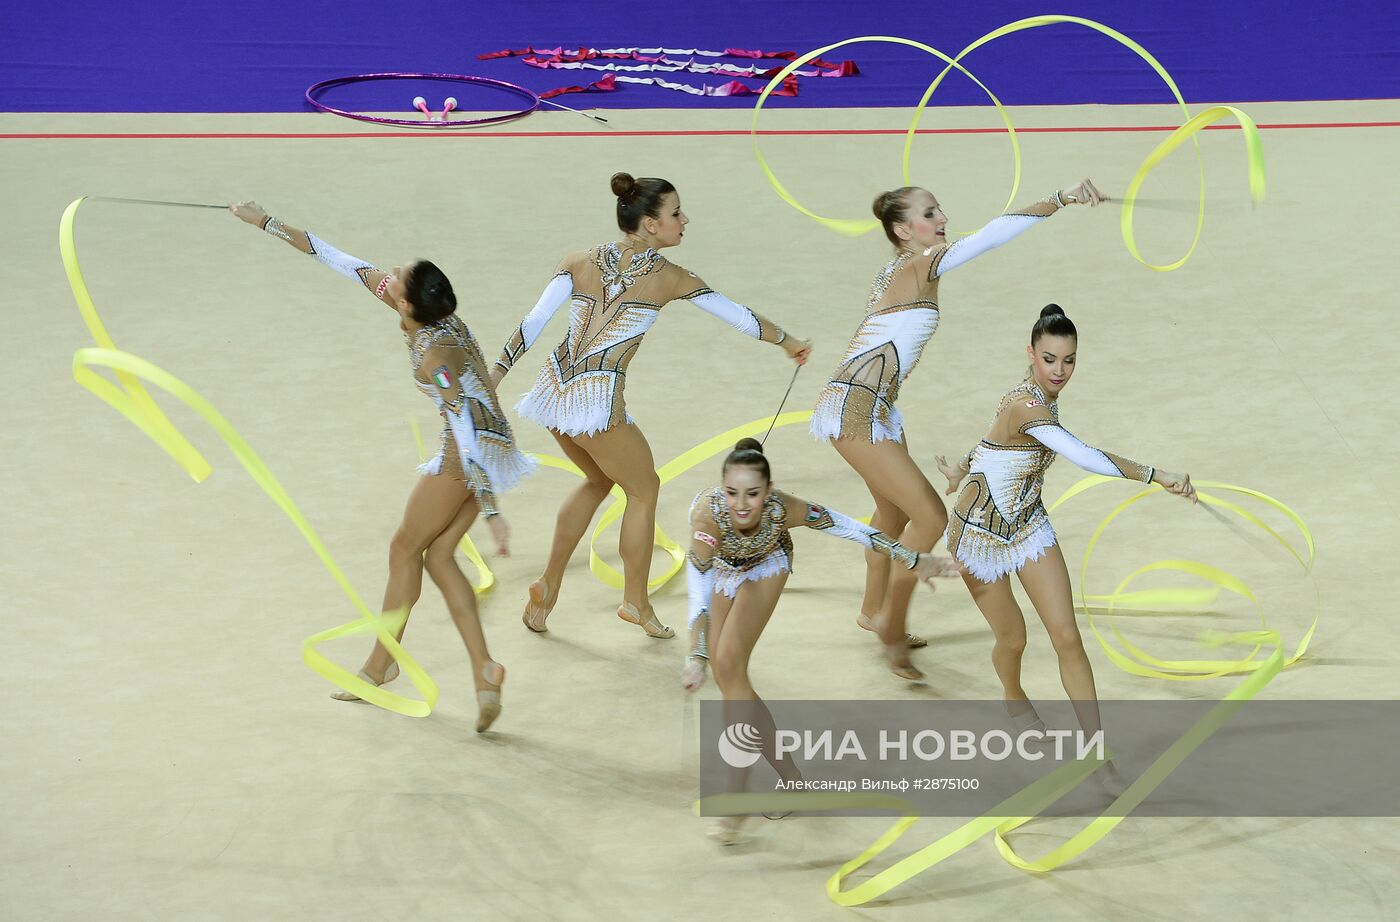 Художественная гимнастика. Чемпионат Европы. Первый день | РИА Новости  Медиабанк